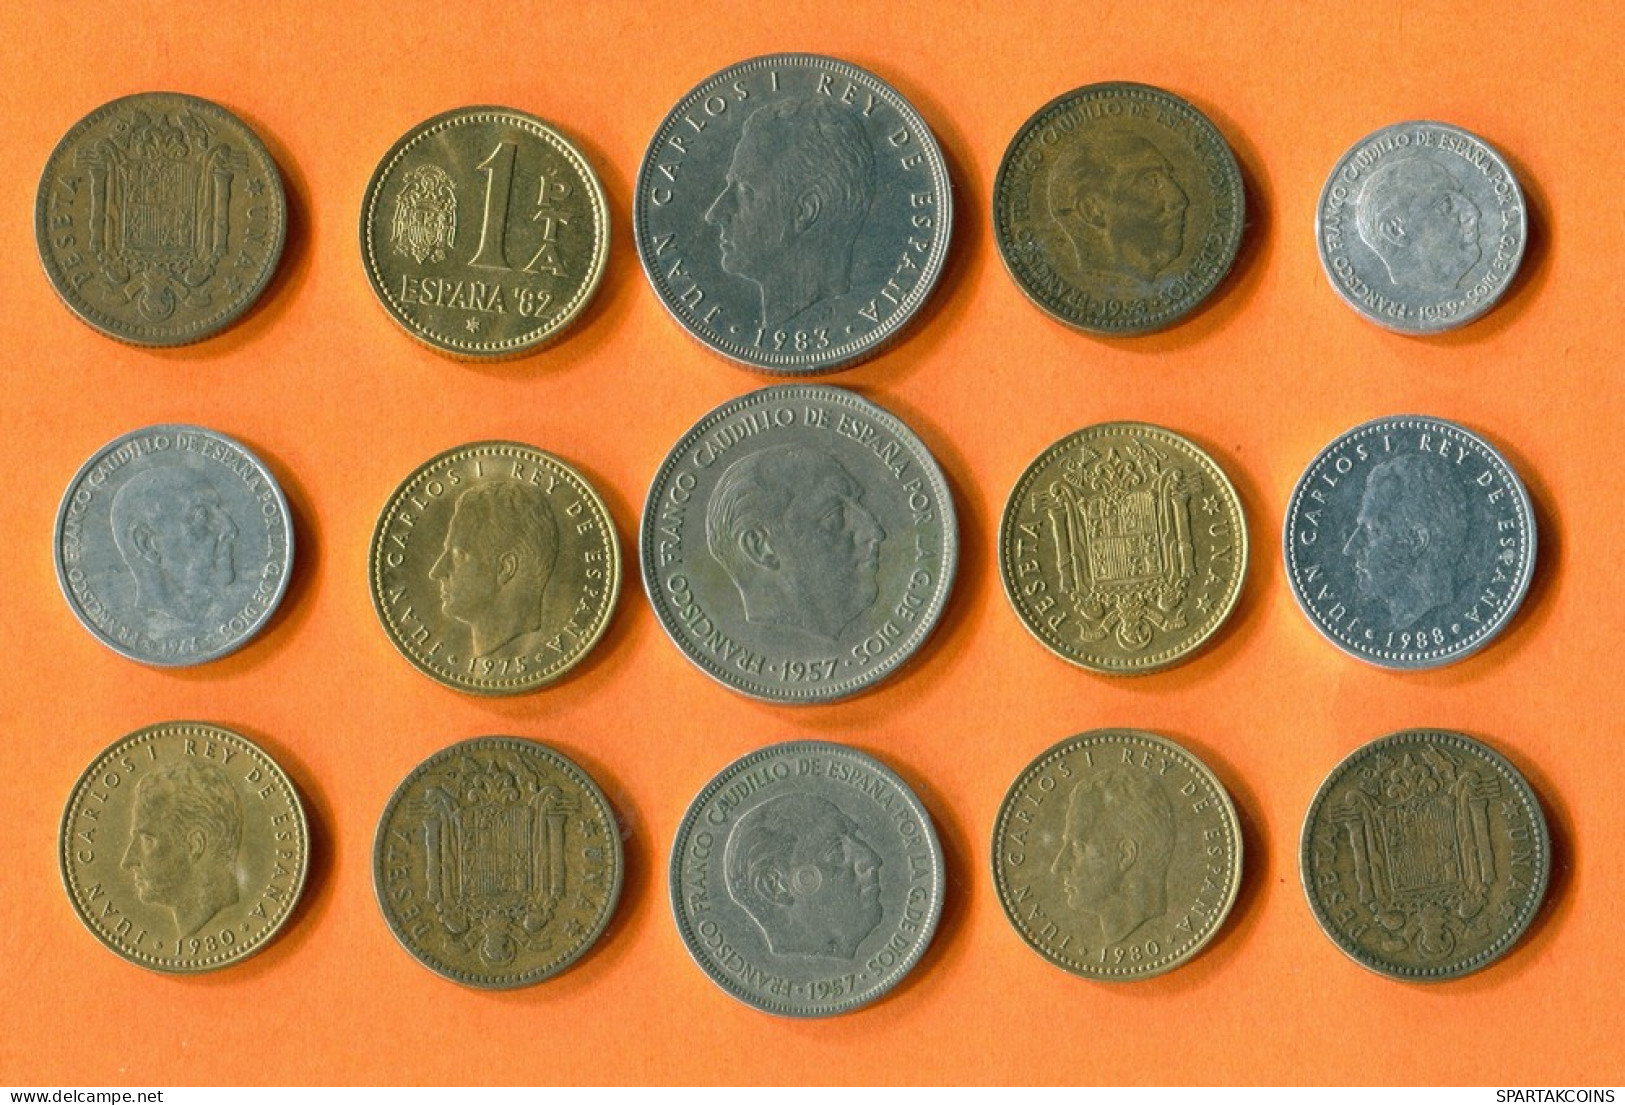 ESPAÑA Moneda SPAIN SPANISH Moneda Collection Mixed Lot #L10242.1.E - Sammlungen